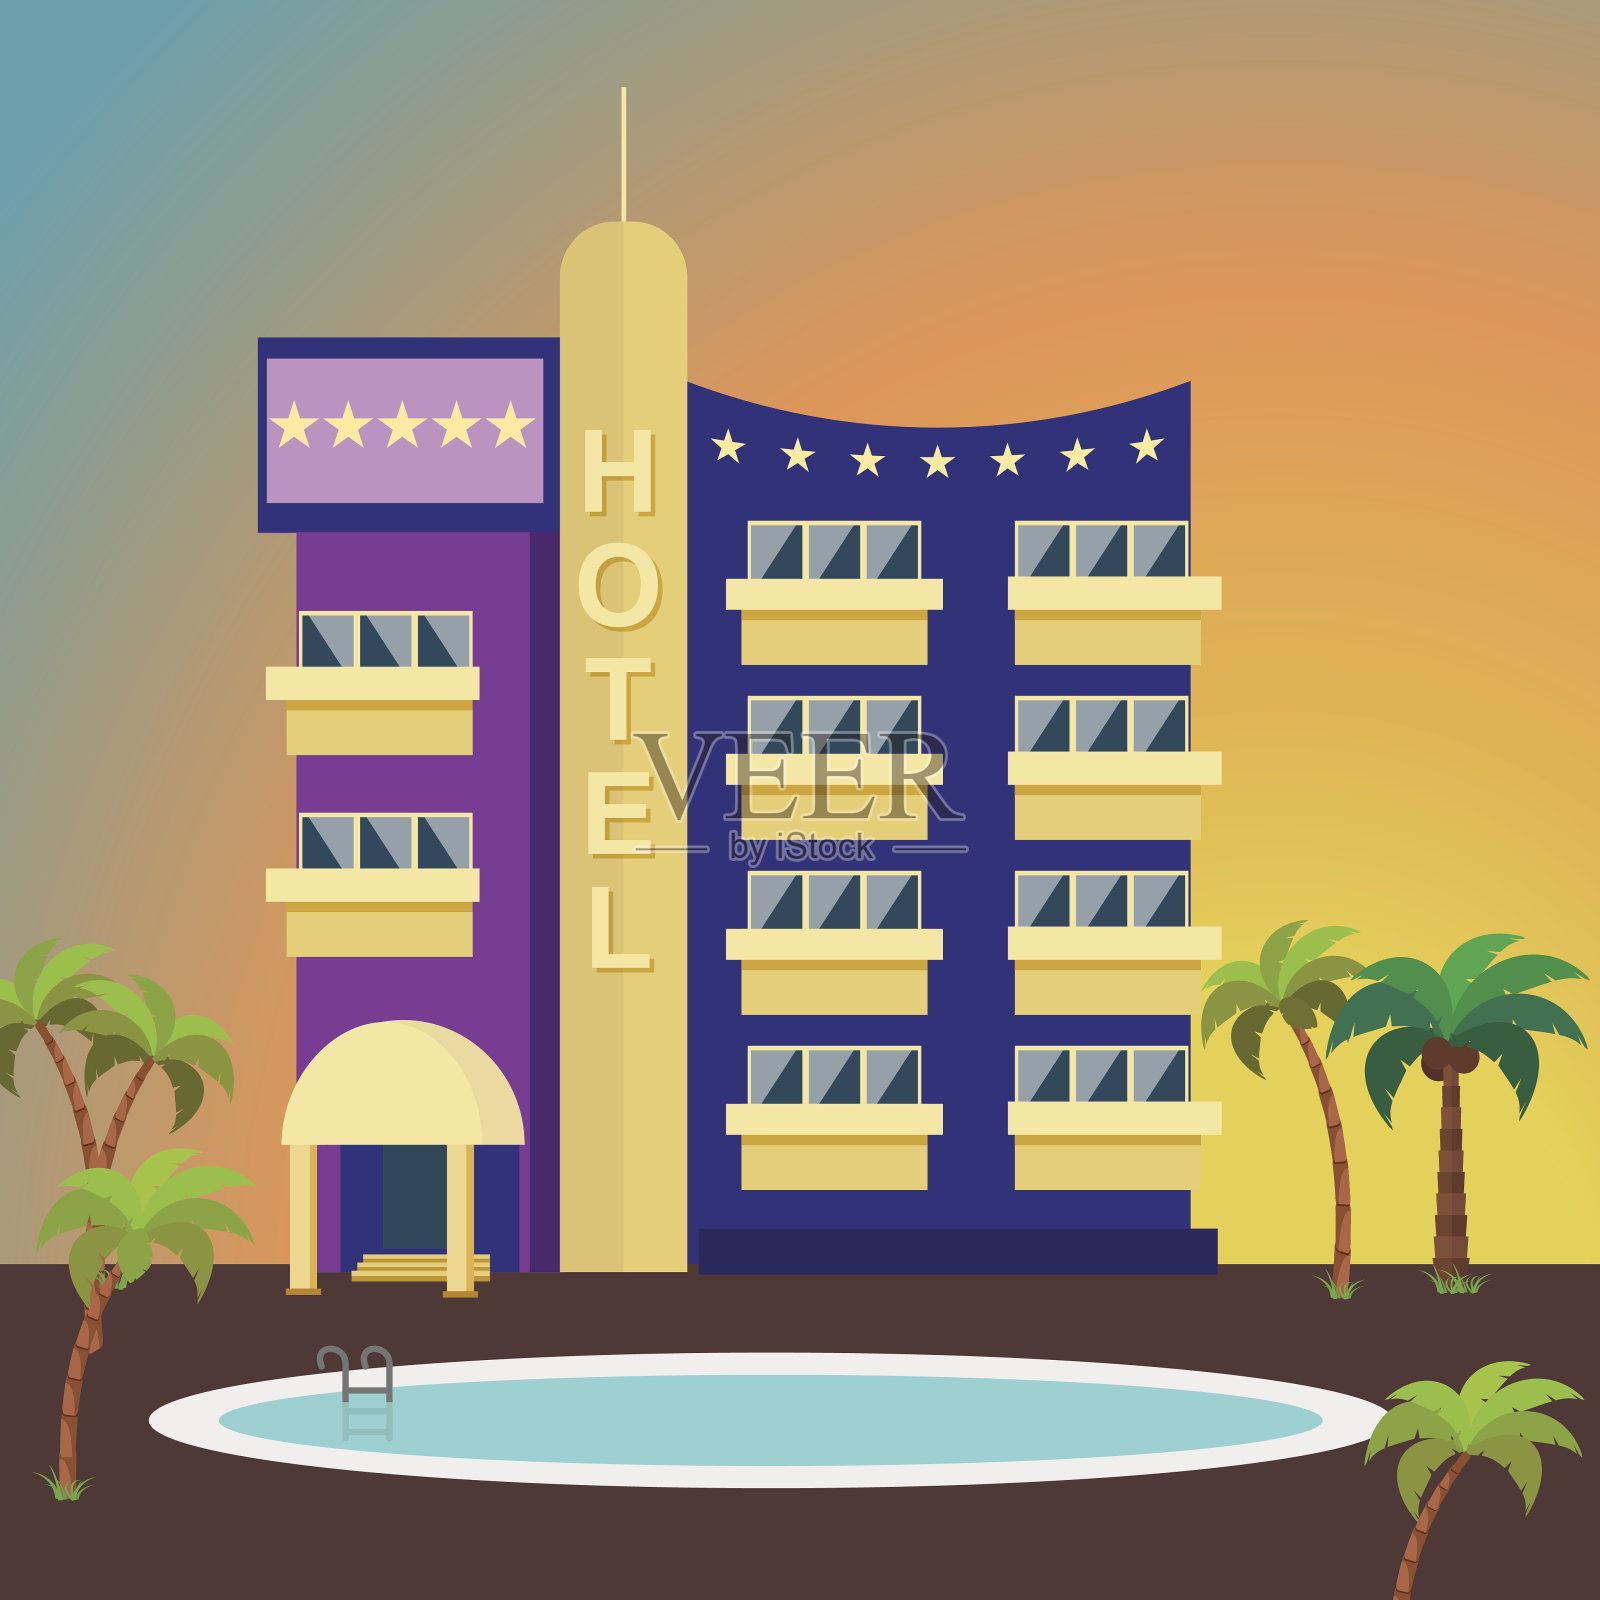 豪华酒店在一个彩色的背景包围着棕榈树和一个游泳池。建筑外观为平面风格。五星级旅游观光酒店。插画图片素材